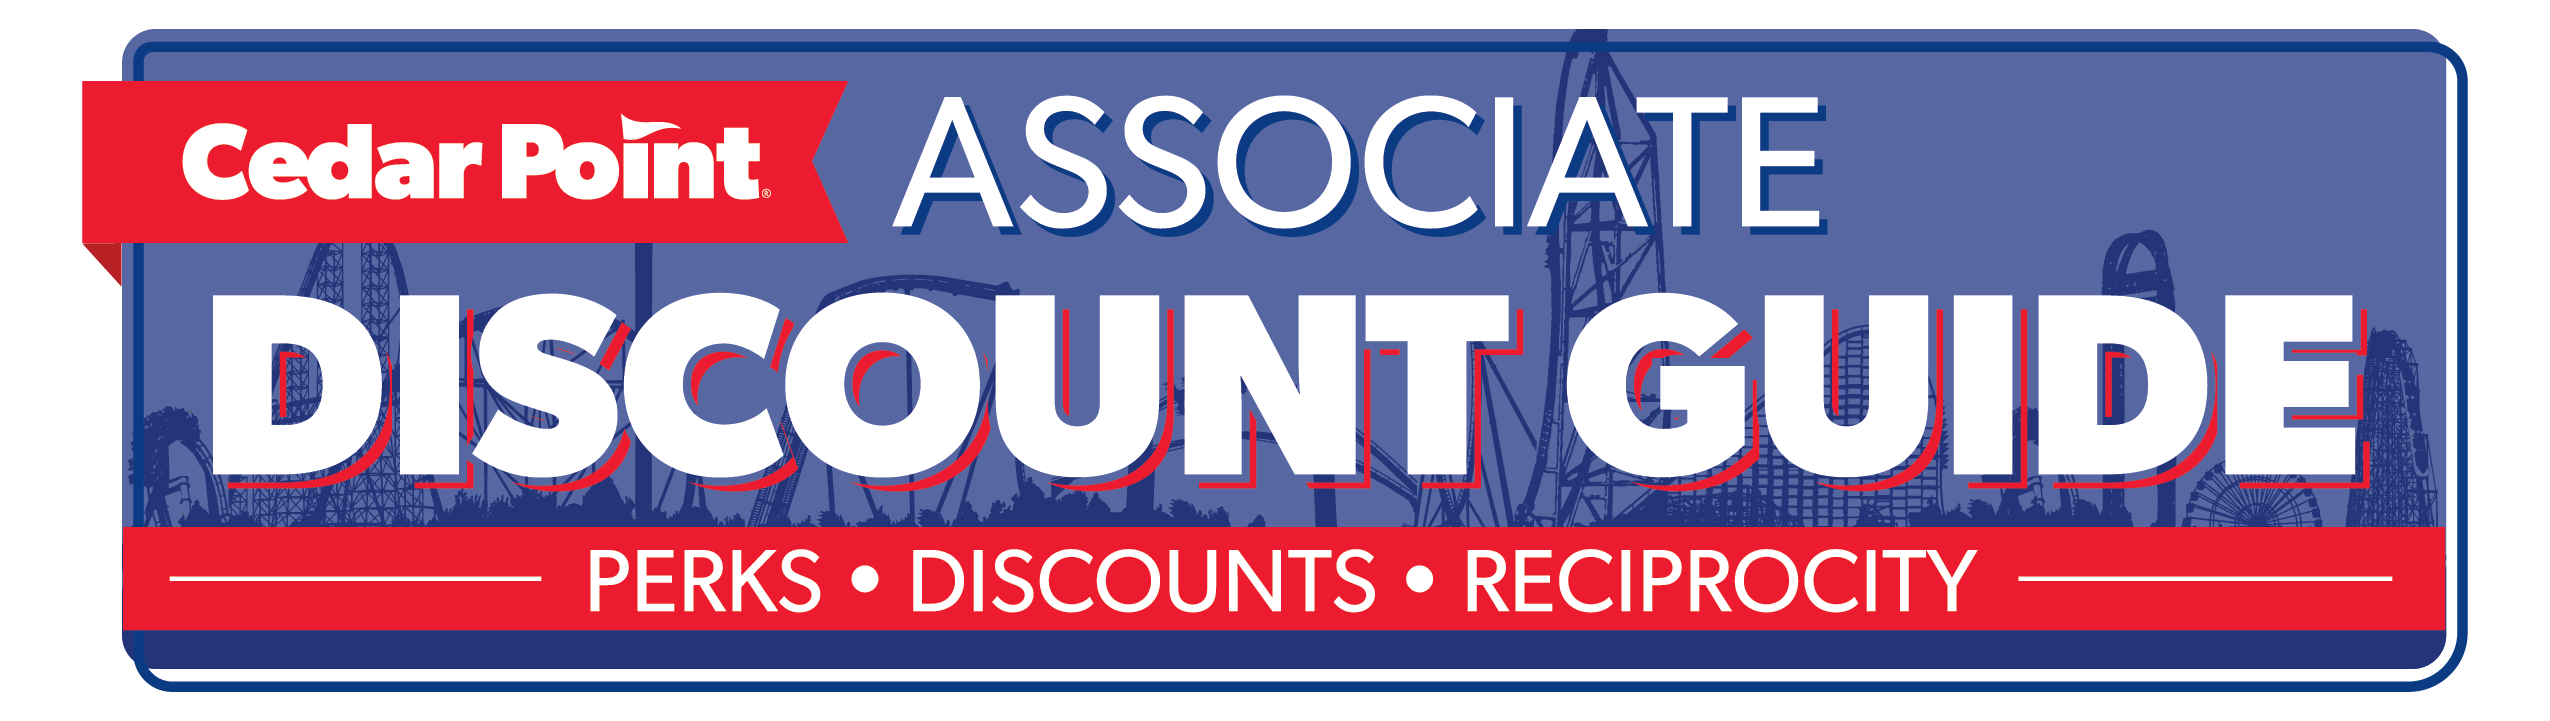 Associate Discount Guide